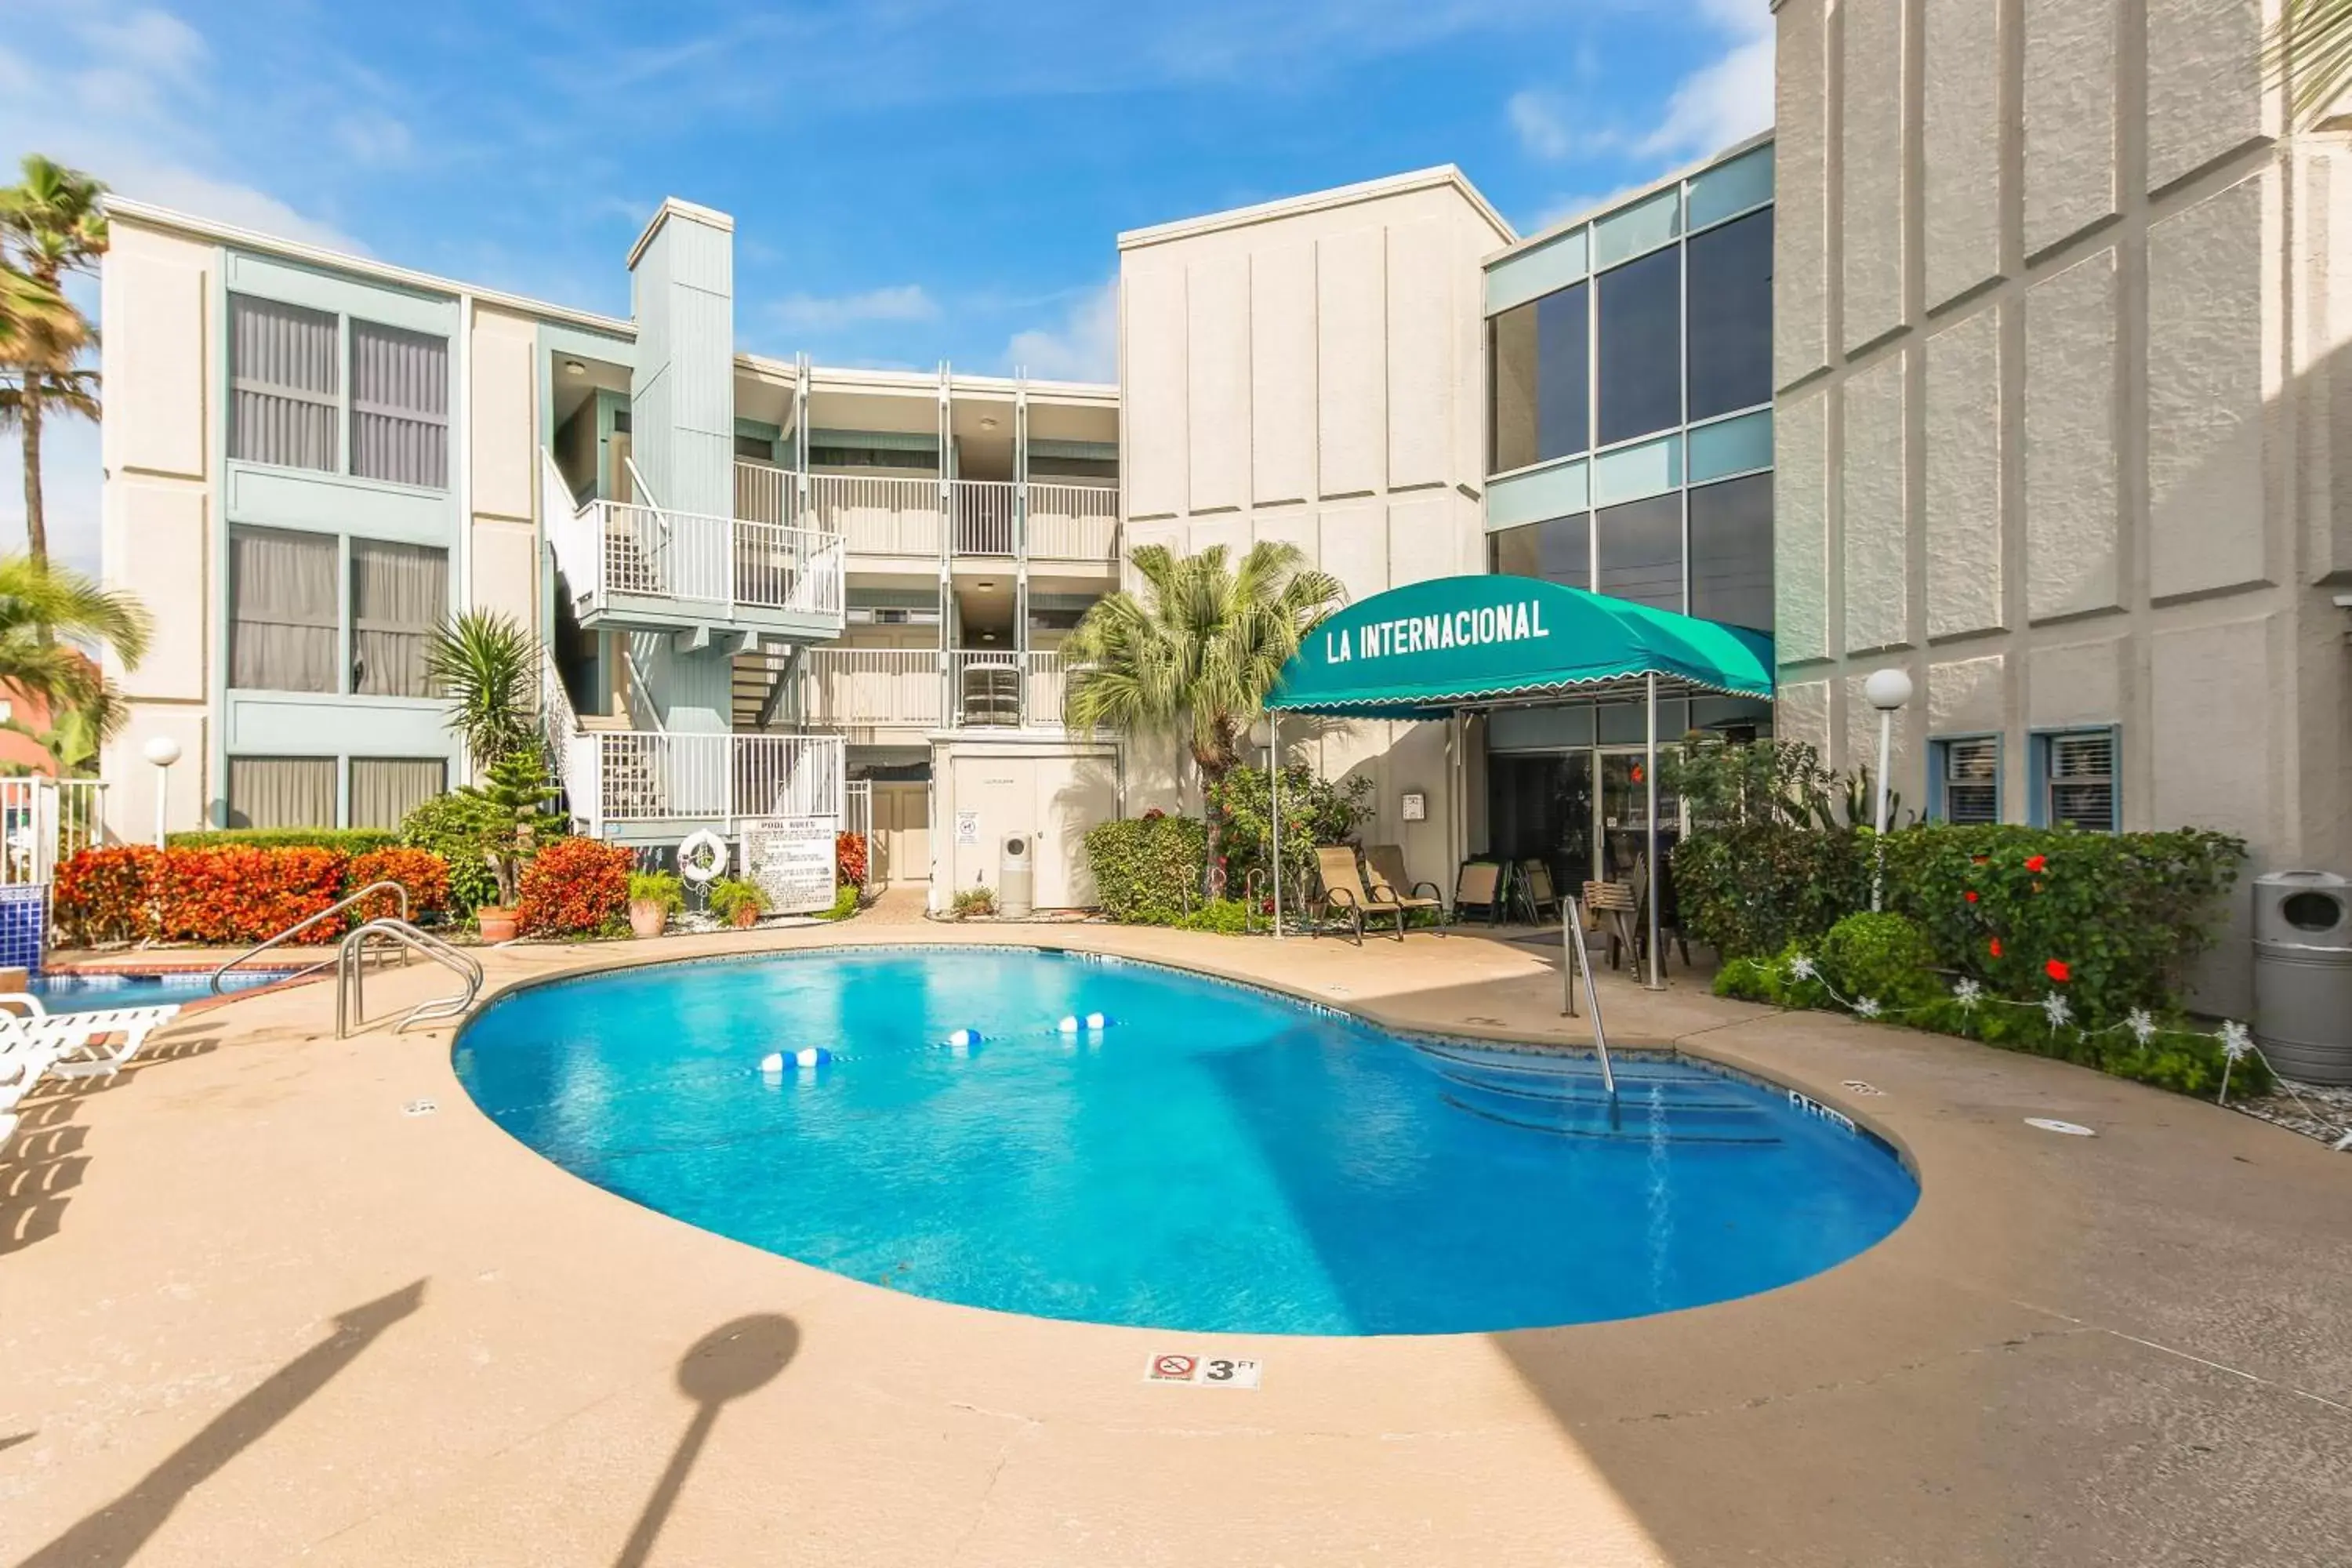 Swimming pool, Property Building in La Internacional Condominiums #210